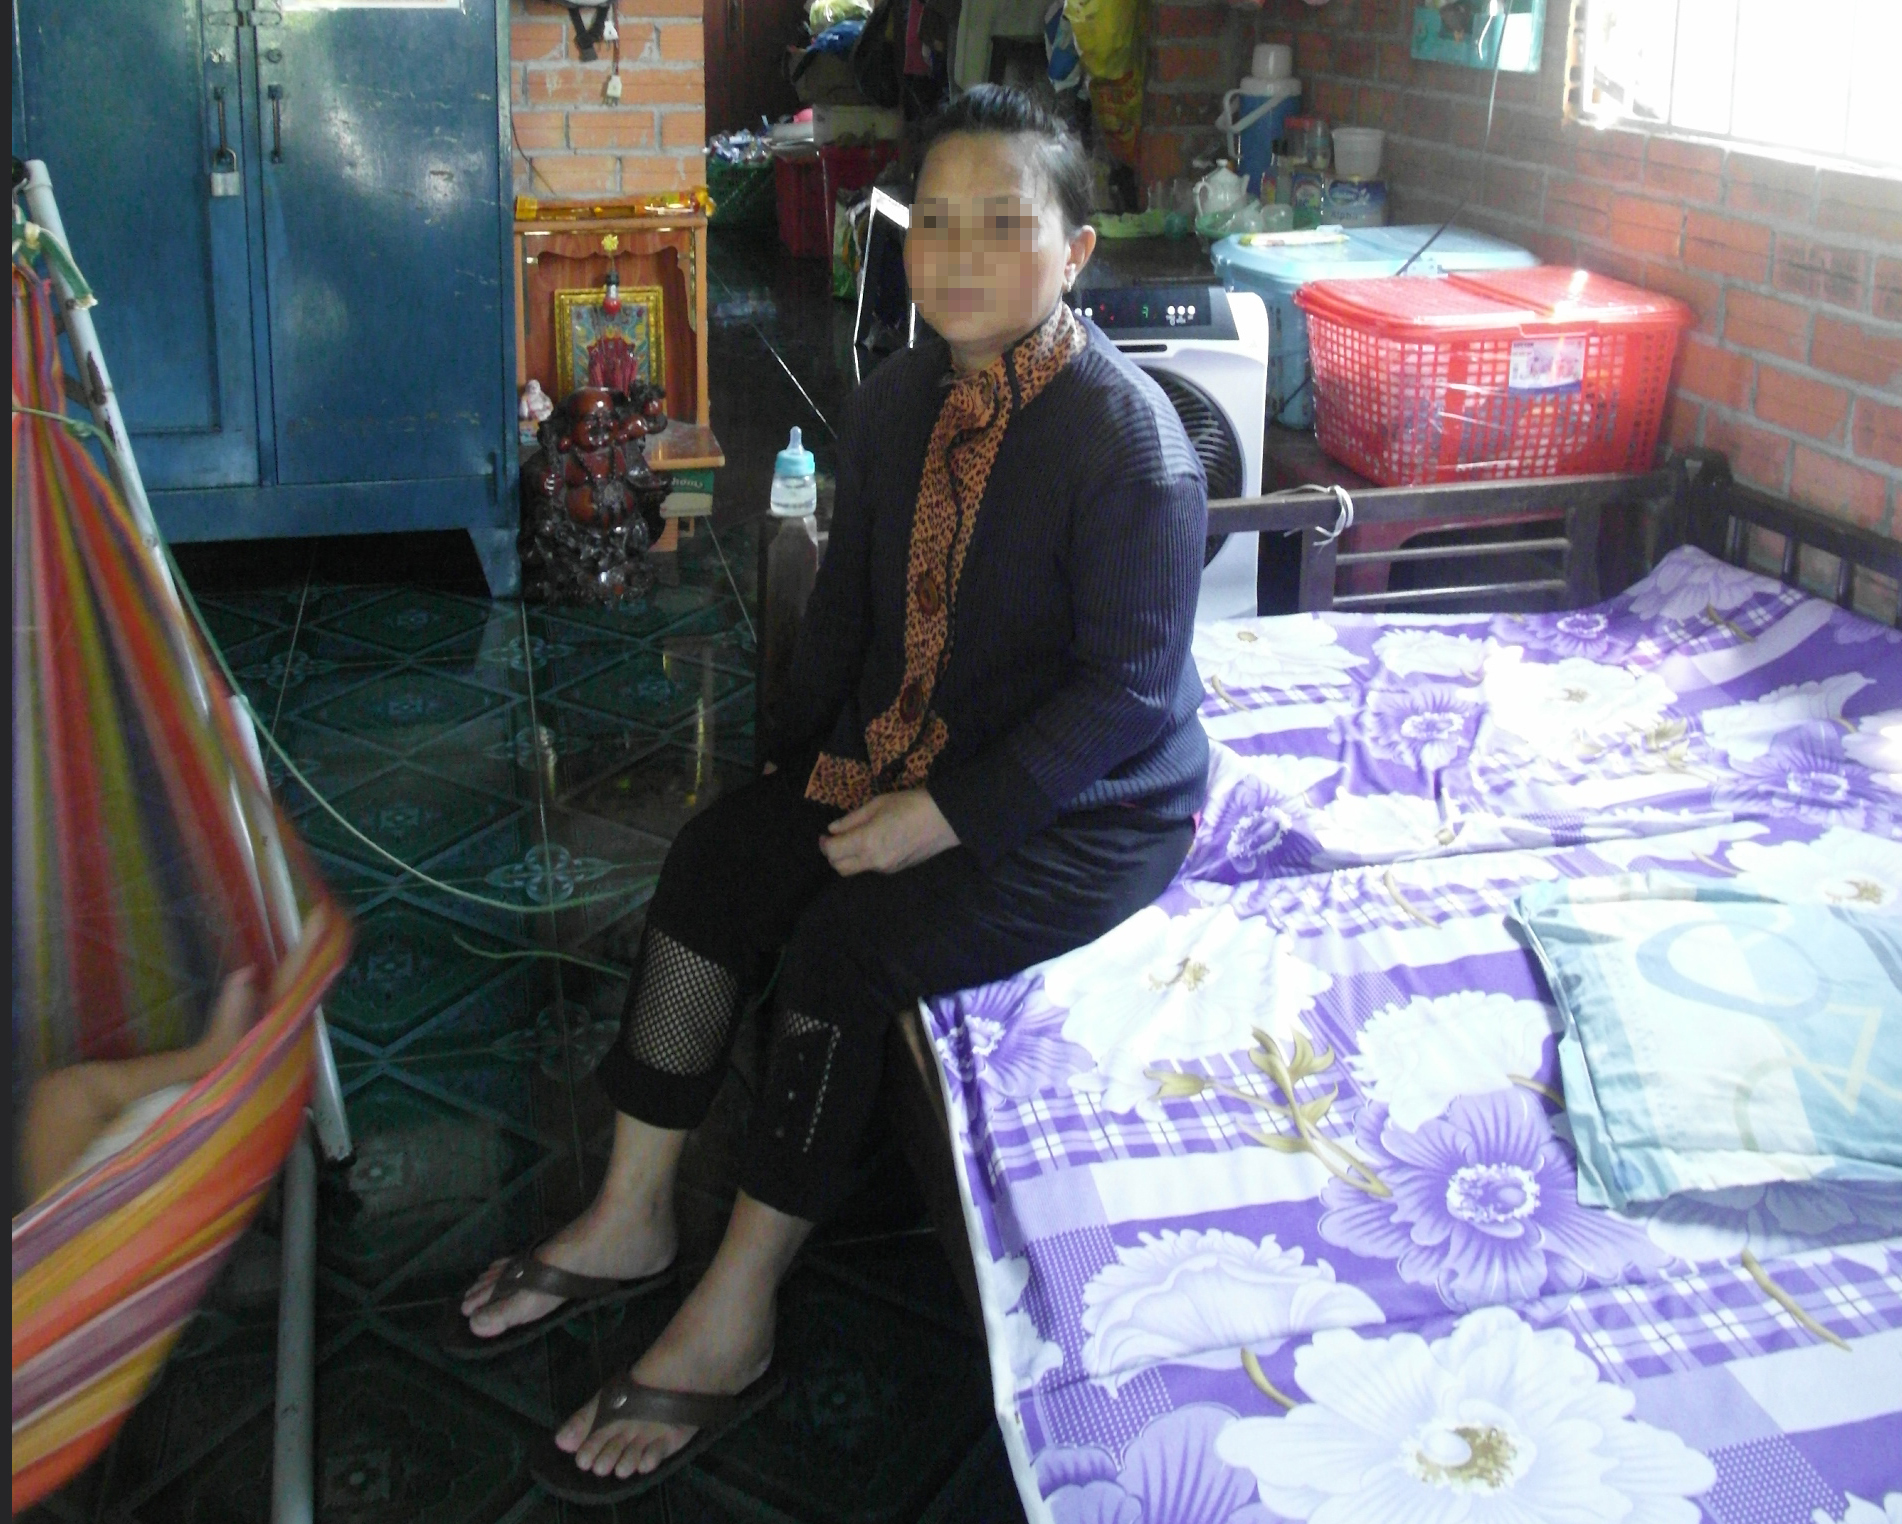  Bà N.T.L (ngụ H.Gò Dầu, Tây Ninh) chưa hết bàng hoàng khi đôi chân bị dị tật